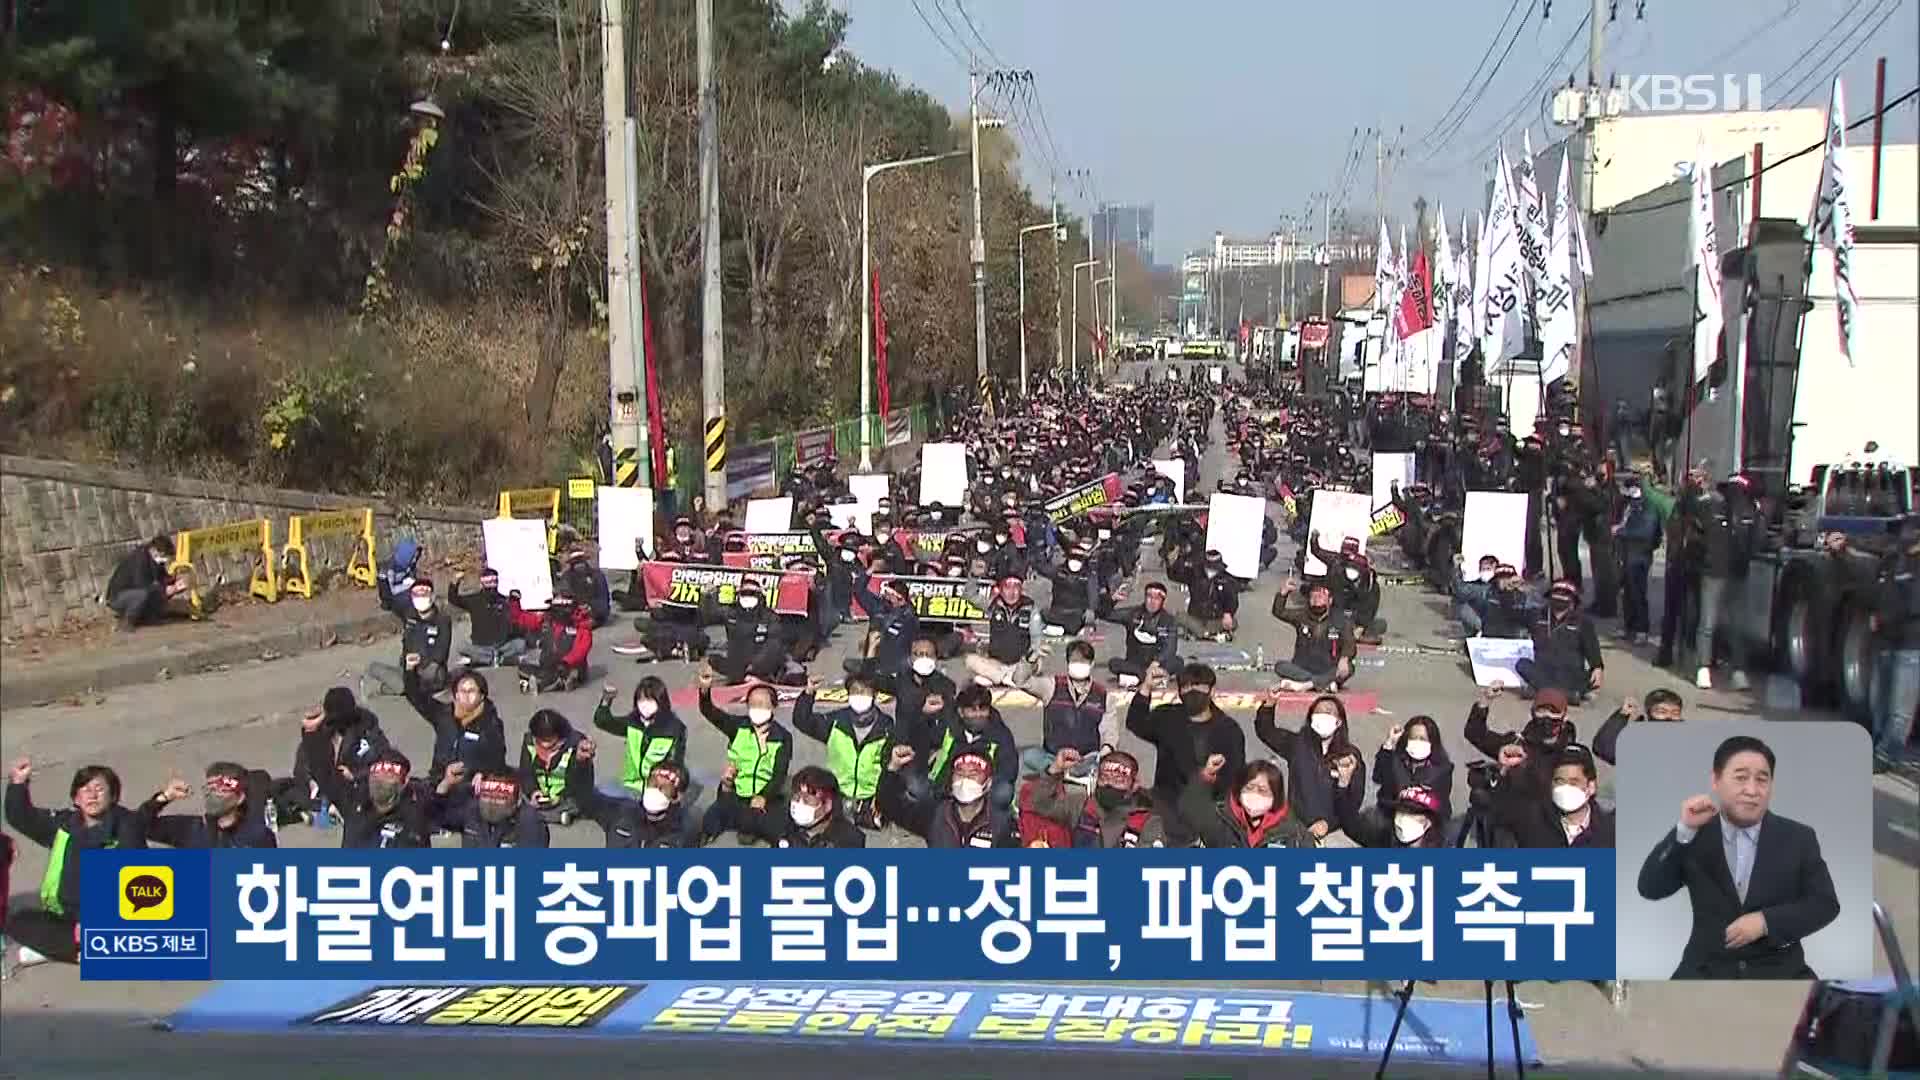 화물연대 총파업 돌입…정부, 파업 철회 촉구